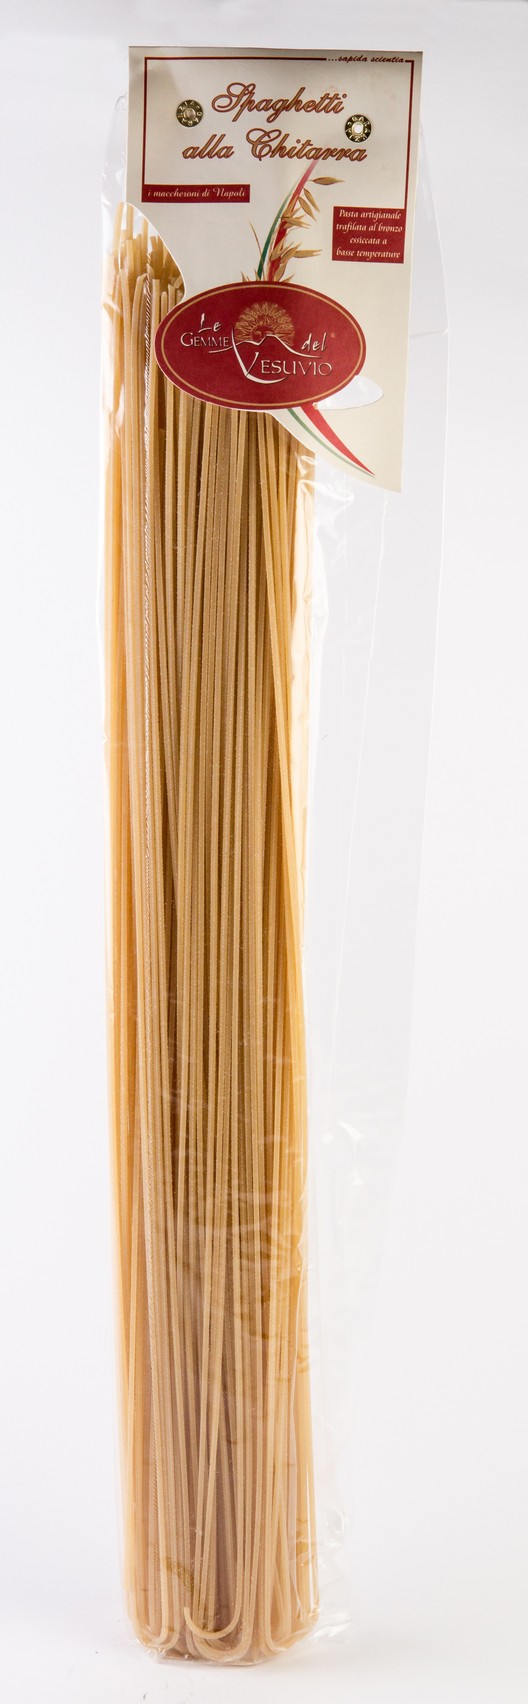 Spaghetti alla Chitarra Lunghi 55cm - 500gr